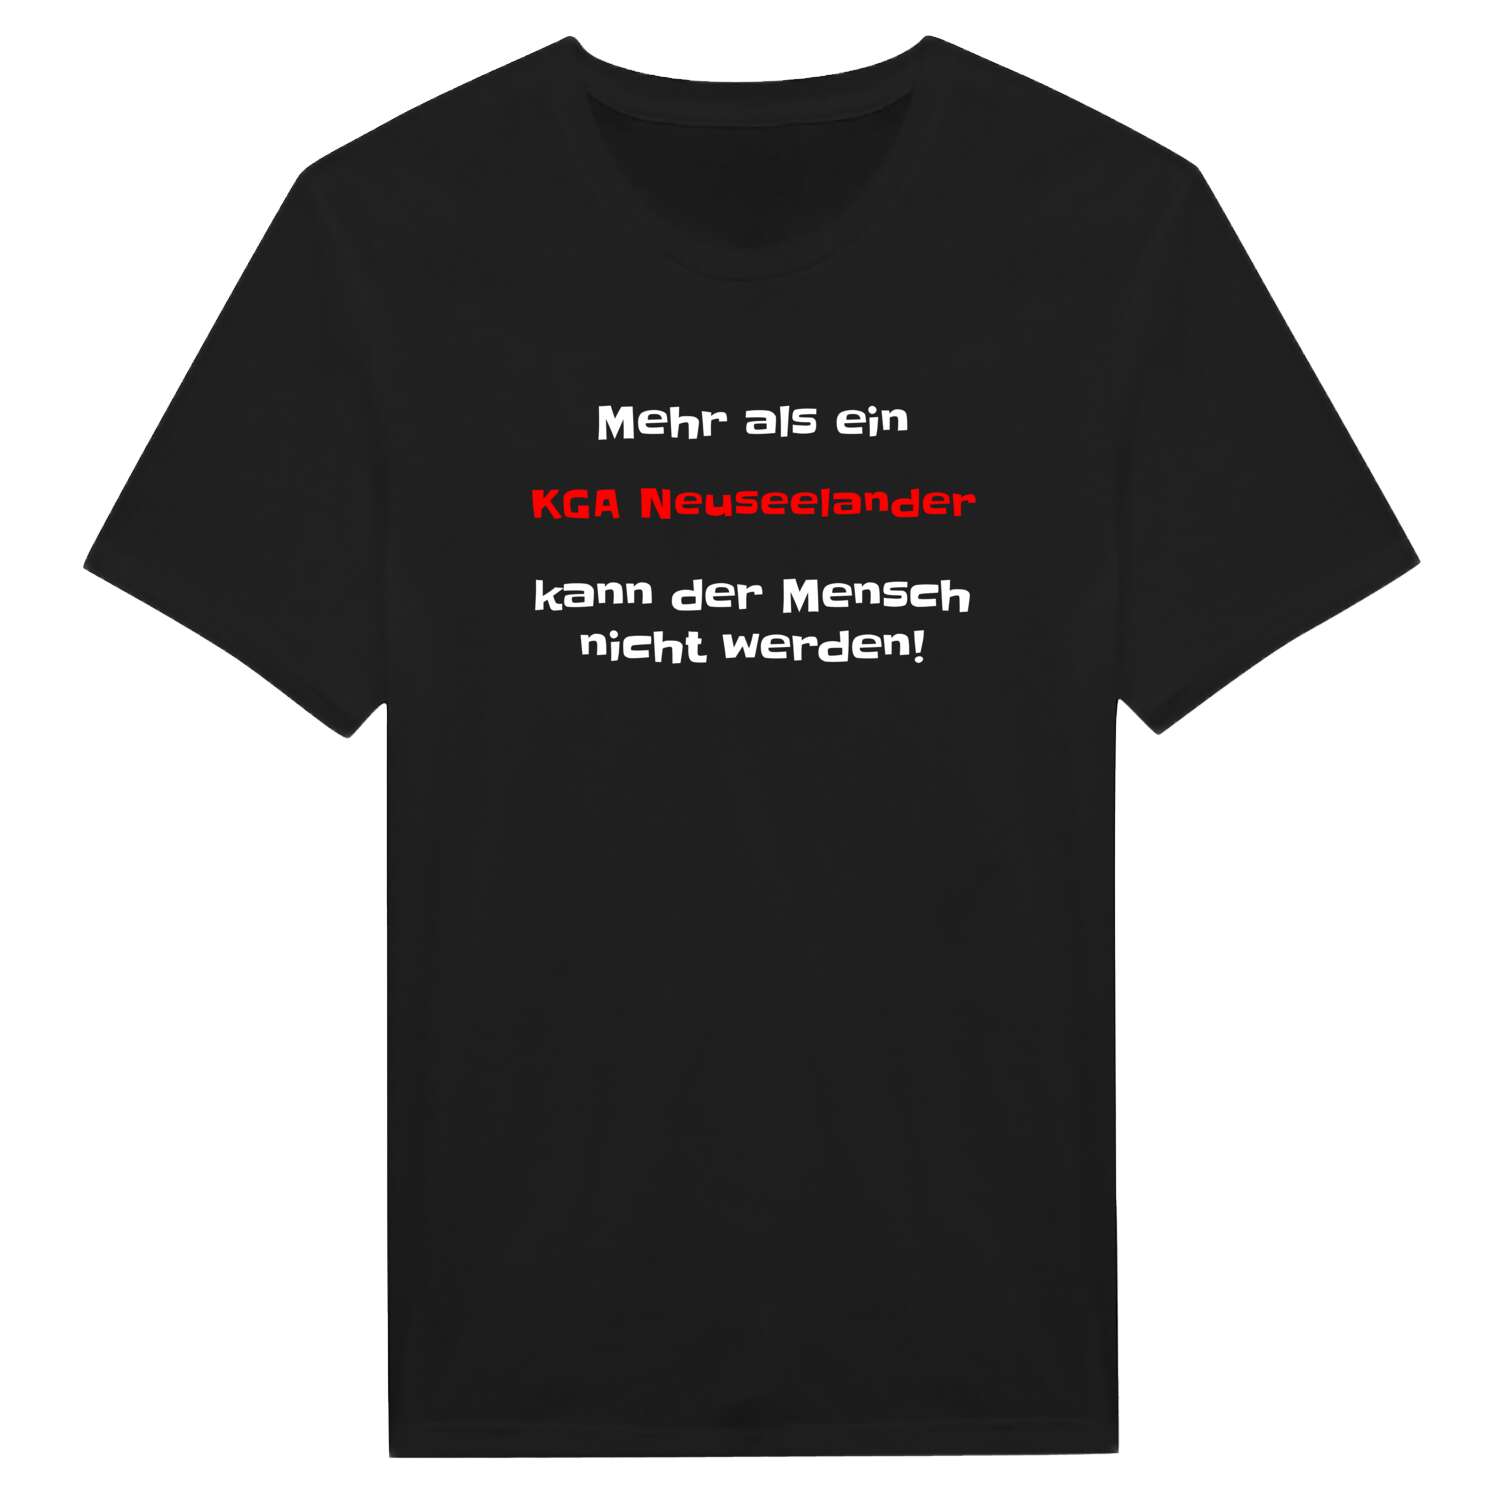 KGA Neuseeland T-Shirt »Mehr als ein«